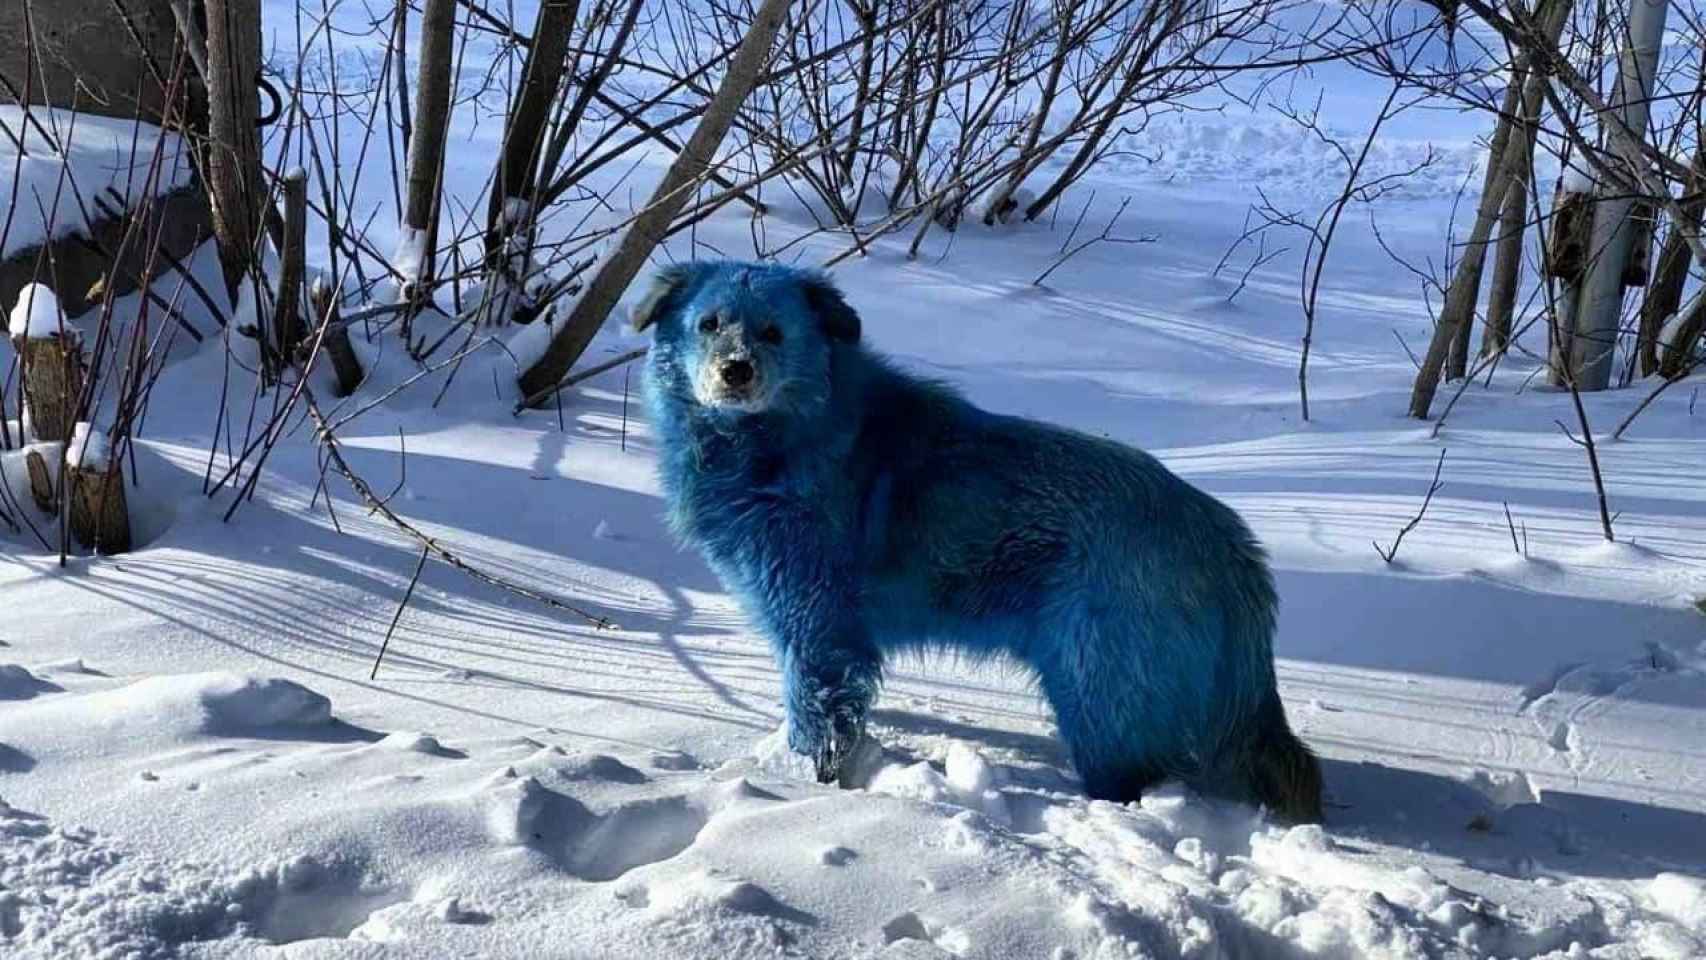 Uno de los perros salvajes encontrados con el pelaje de color azul / TWITTER